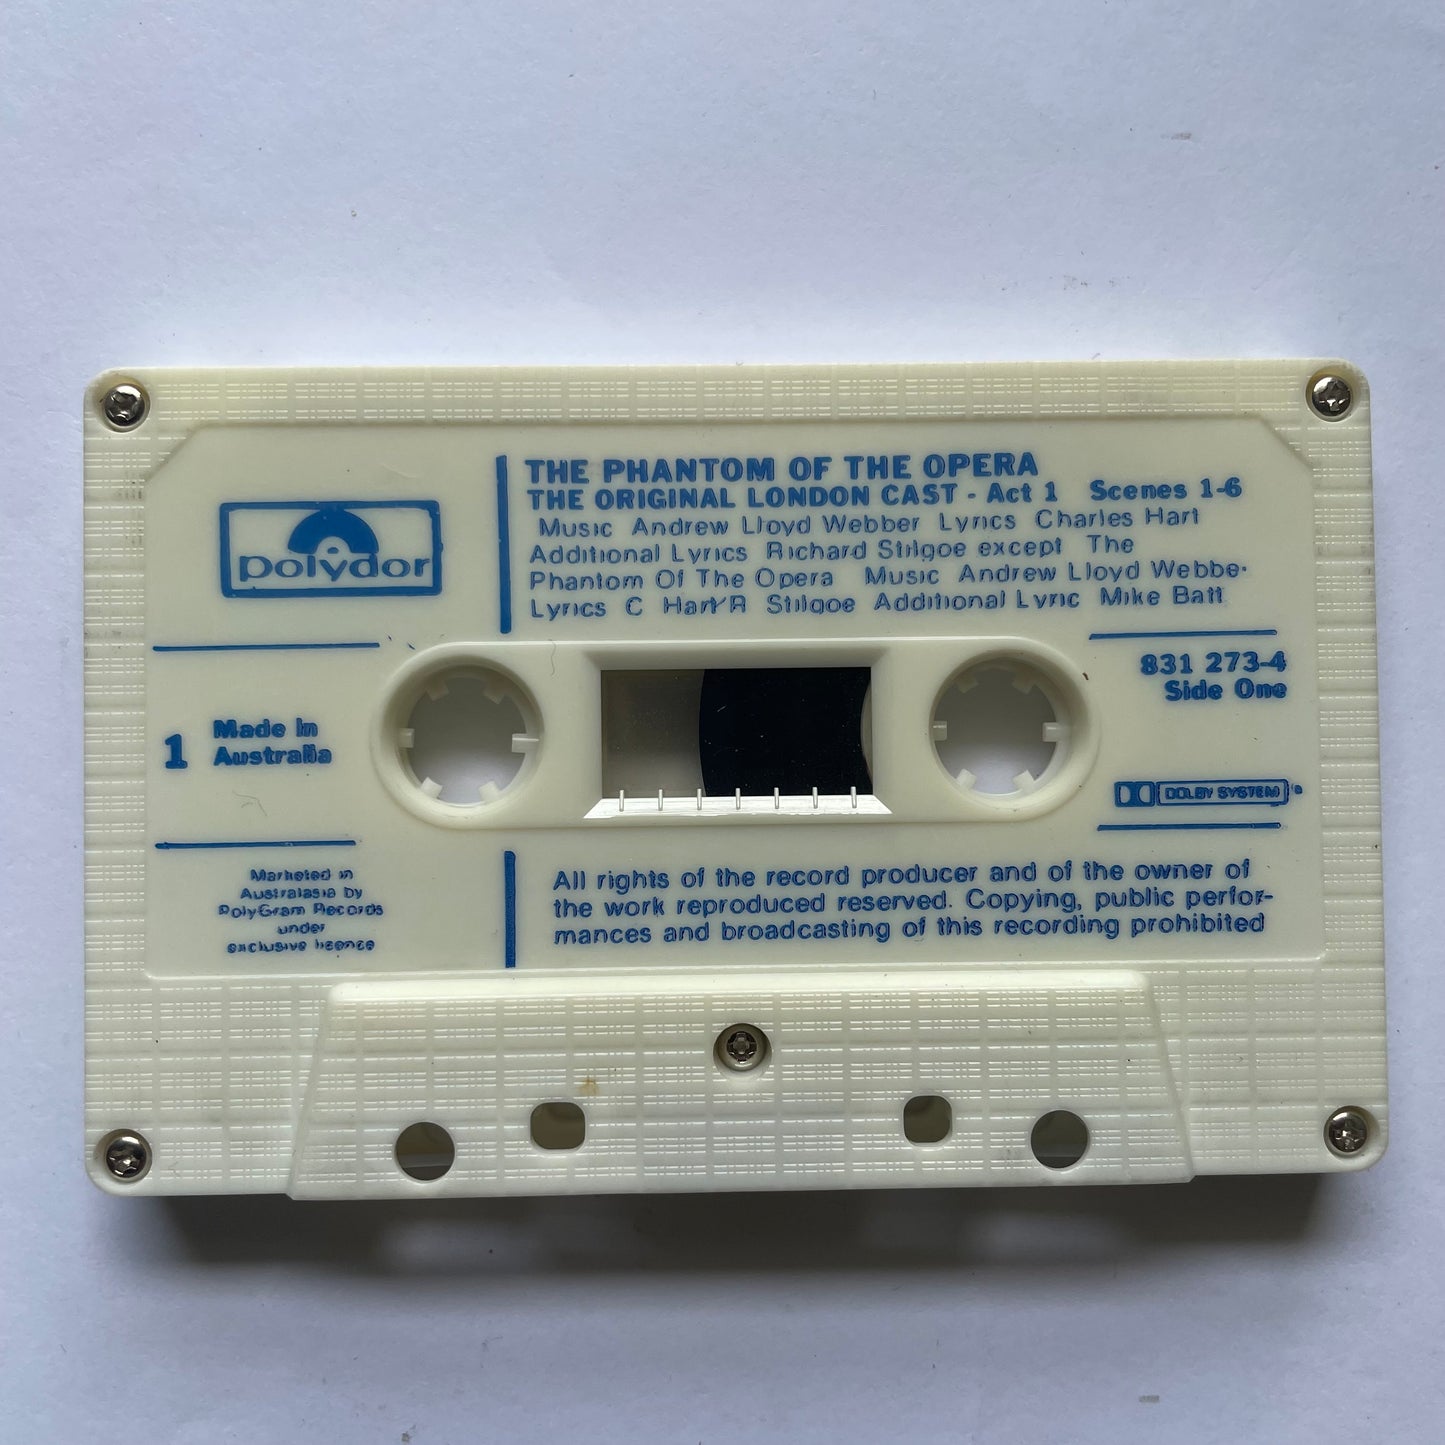 Tape Cassette The Phantom of the Opera side 1